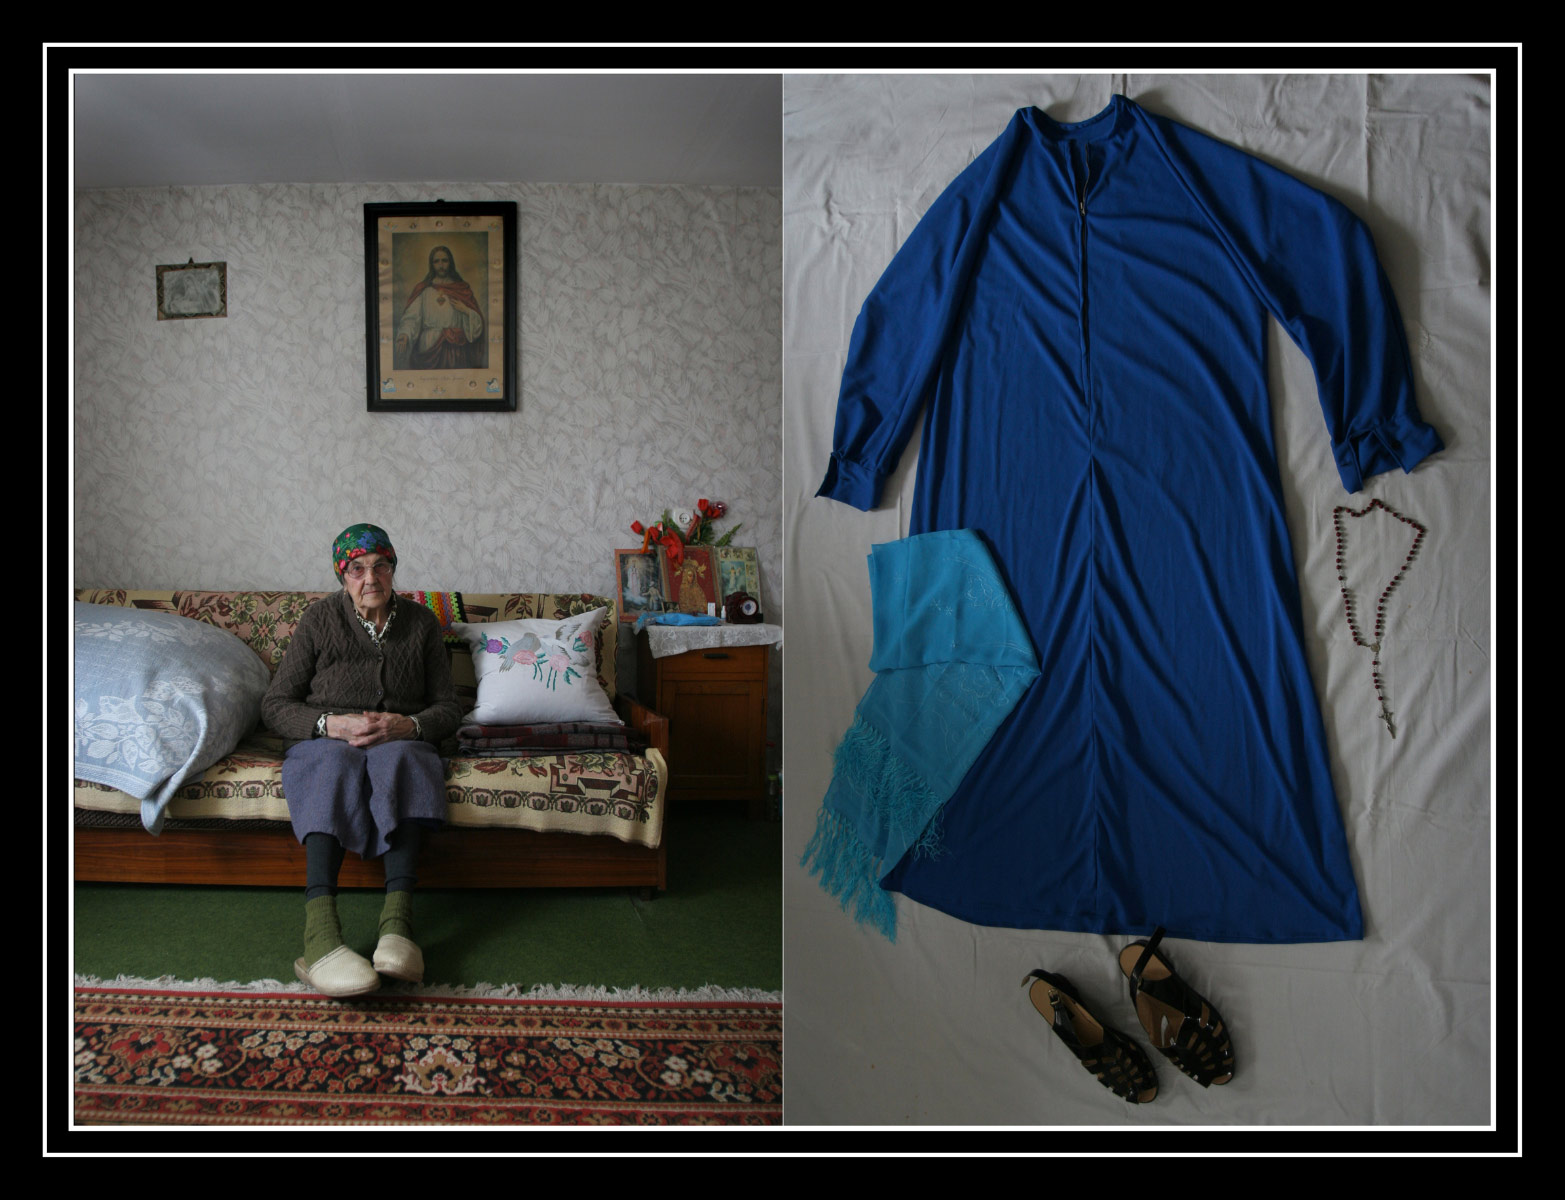 Clothes for death - Documentary photographer Anna Bedyńska